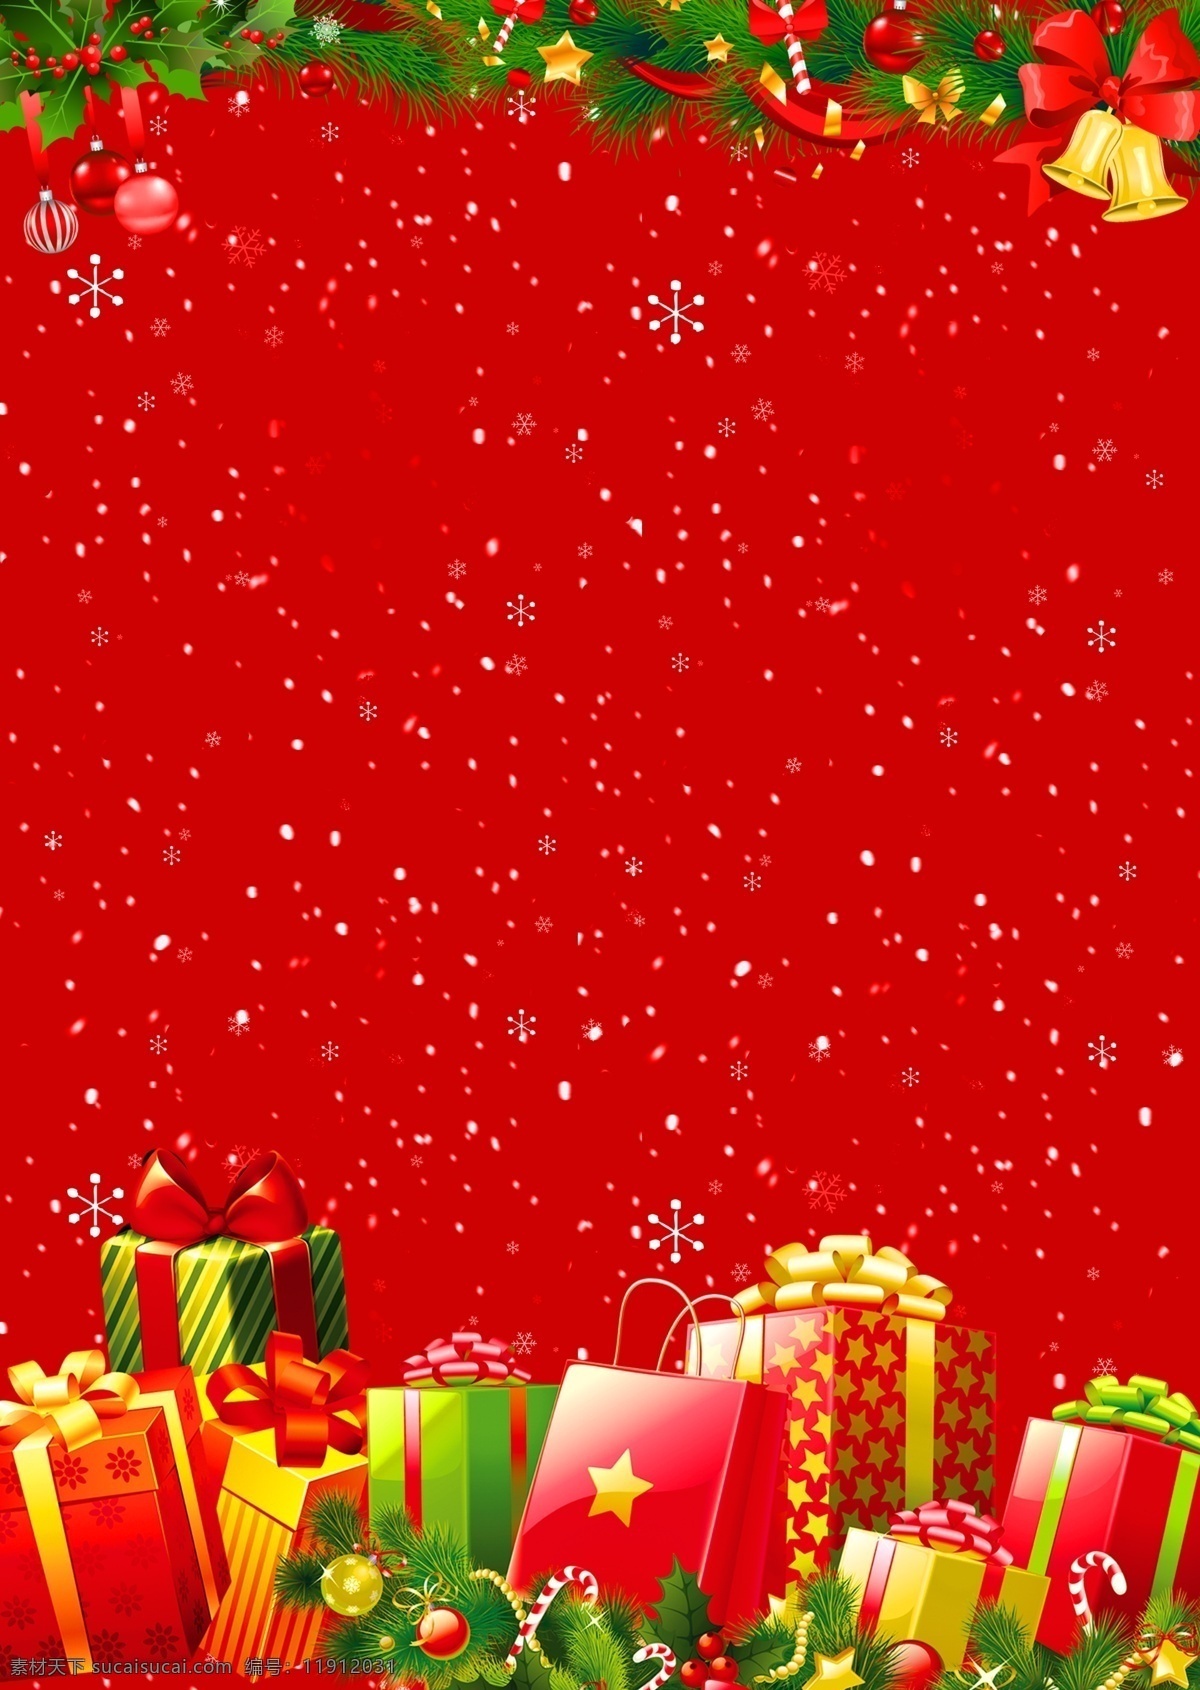 喜庆 圣诞节 促销 背景 红色 雪花 圣诞背景 礼物 圣诞装饰 圣诞快乐 圣诞节背景 圣诞广告 背景设计 广告背景 圣诞 节日背景